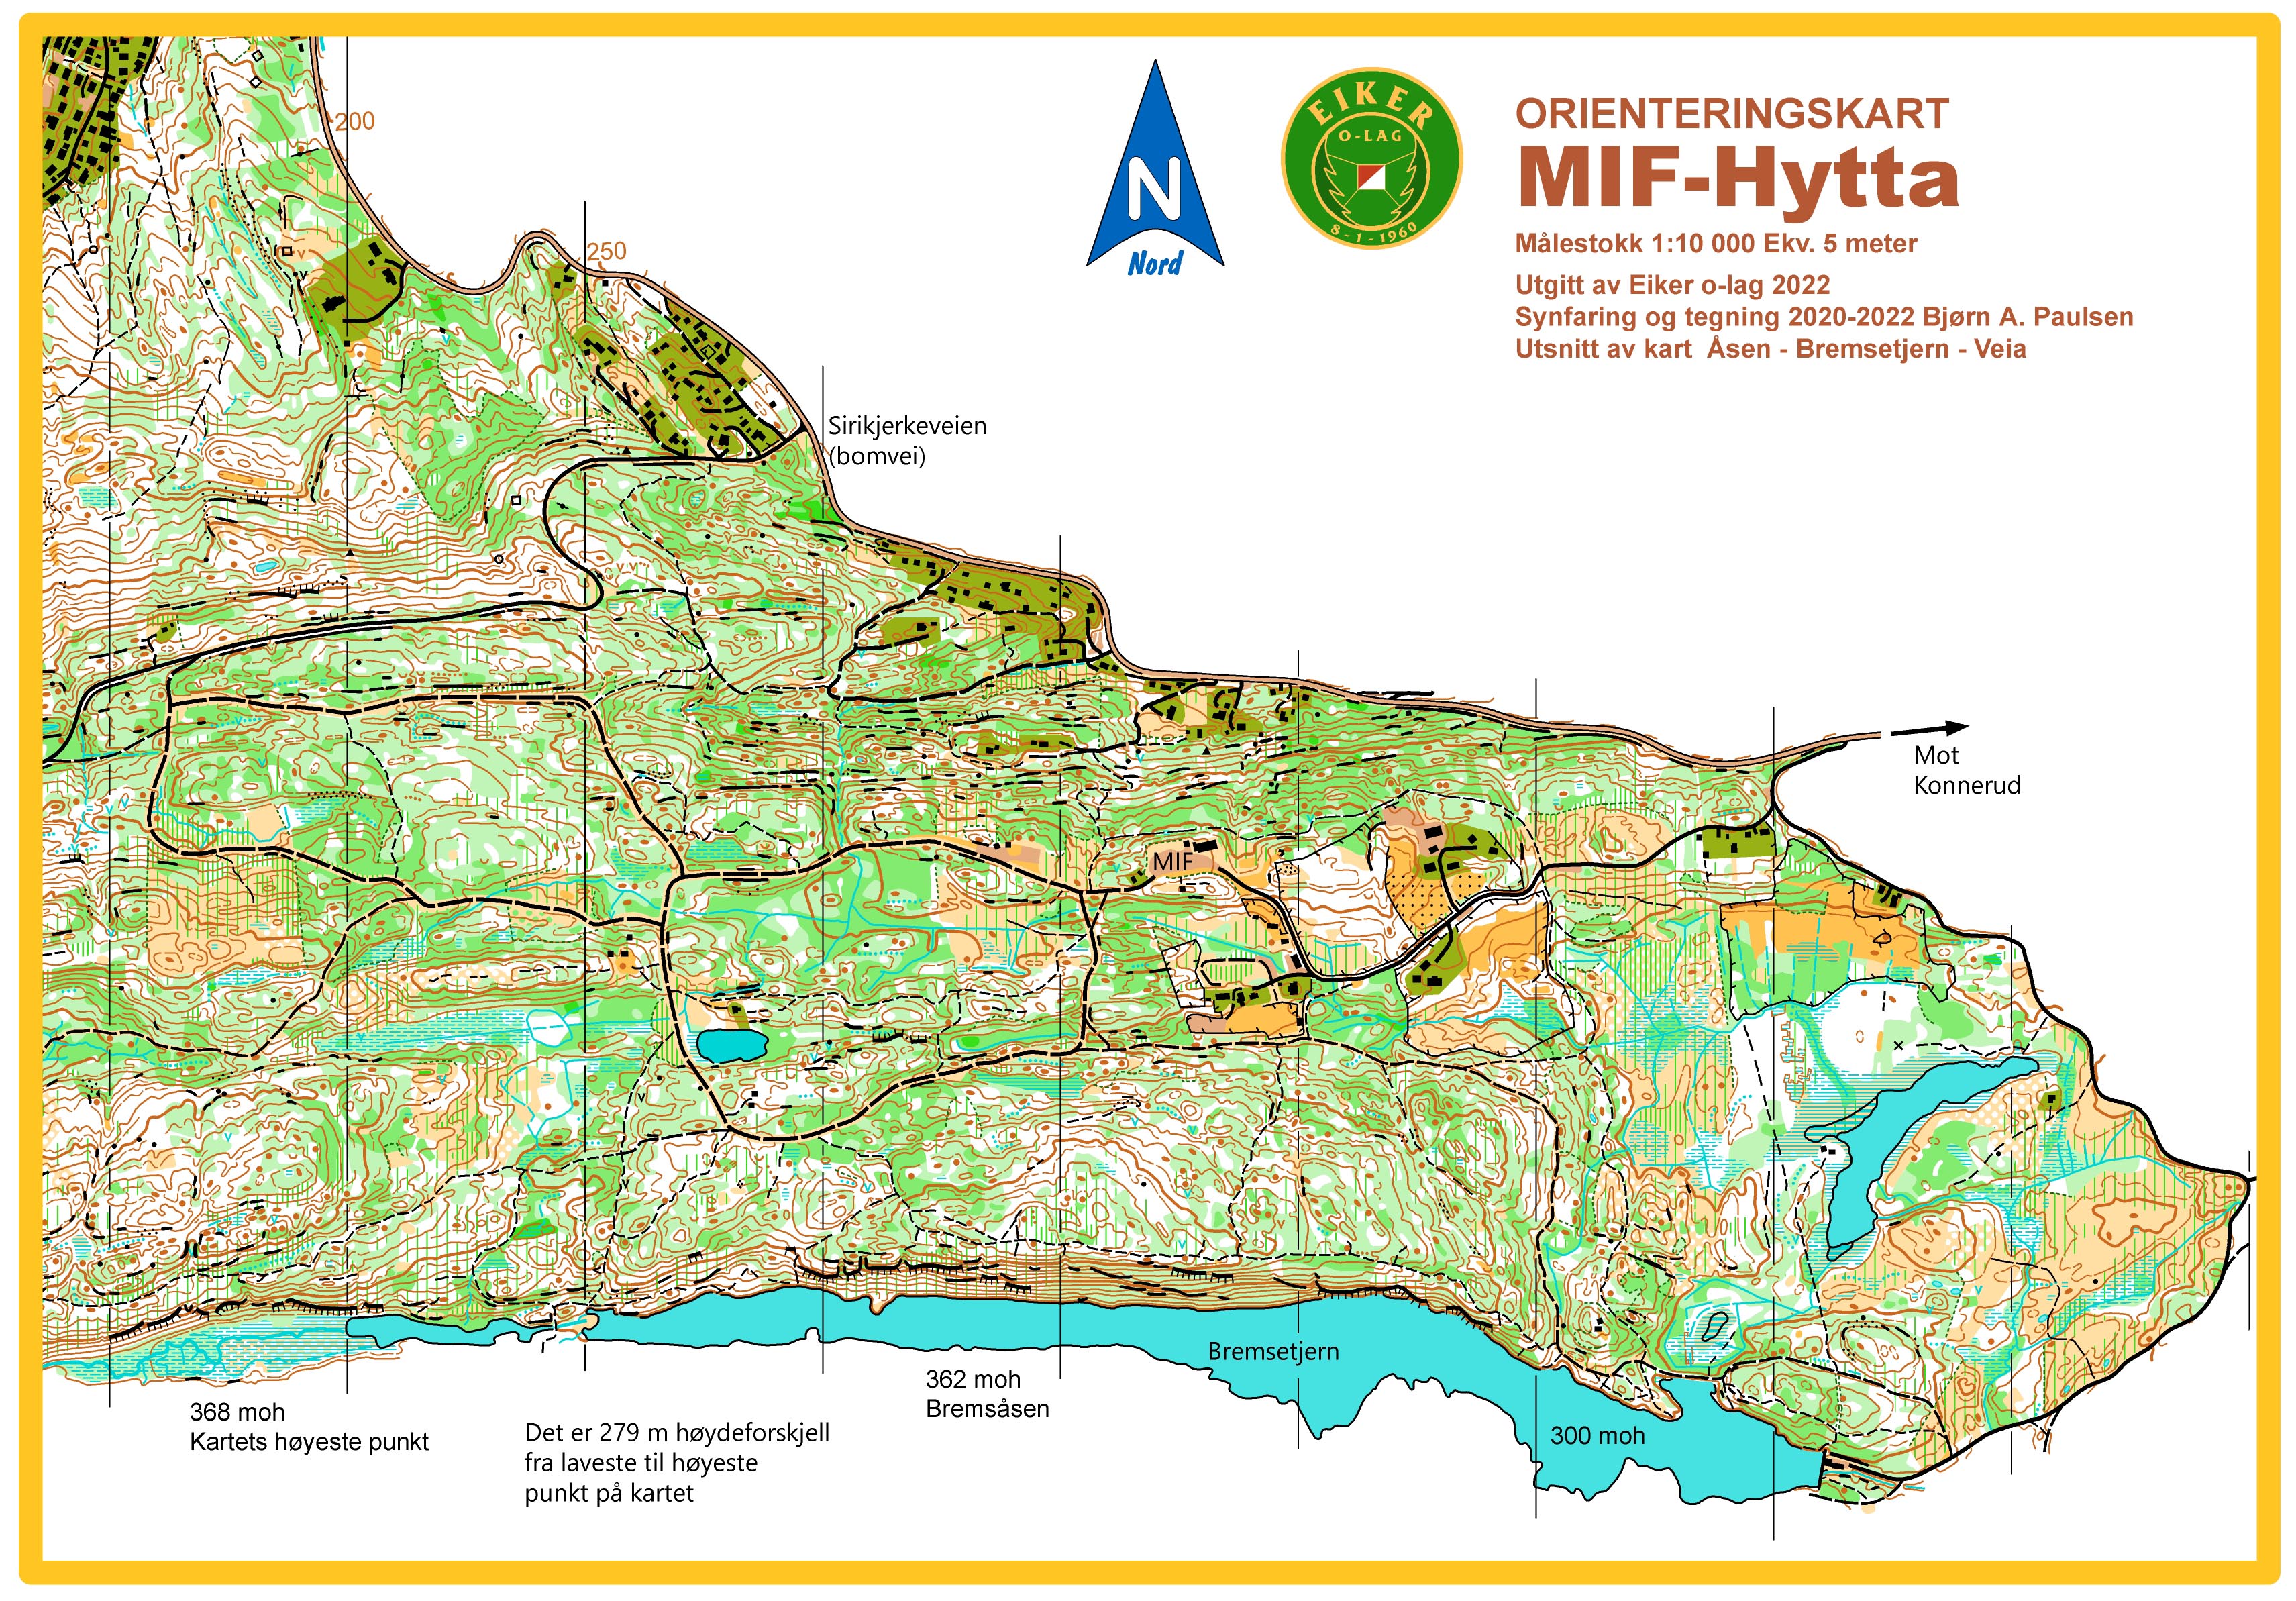 MIF-Hytta 10 000 (01-01-2022)